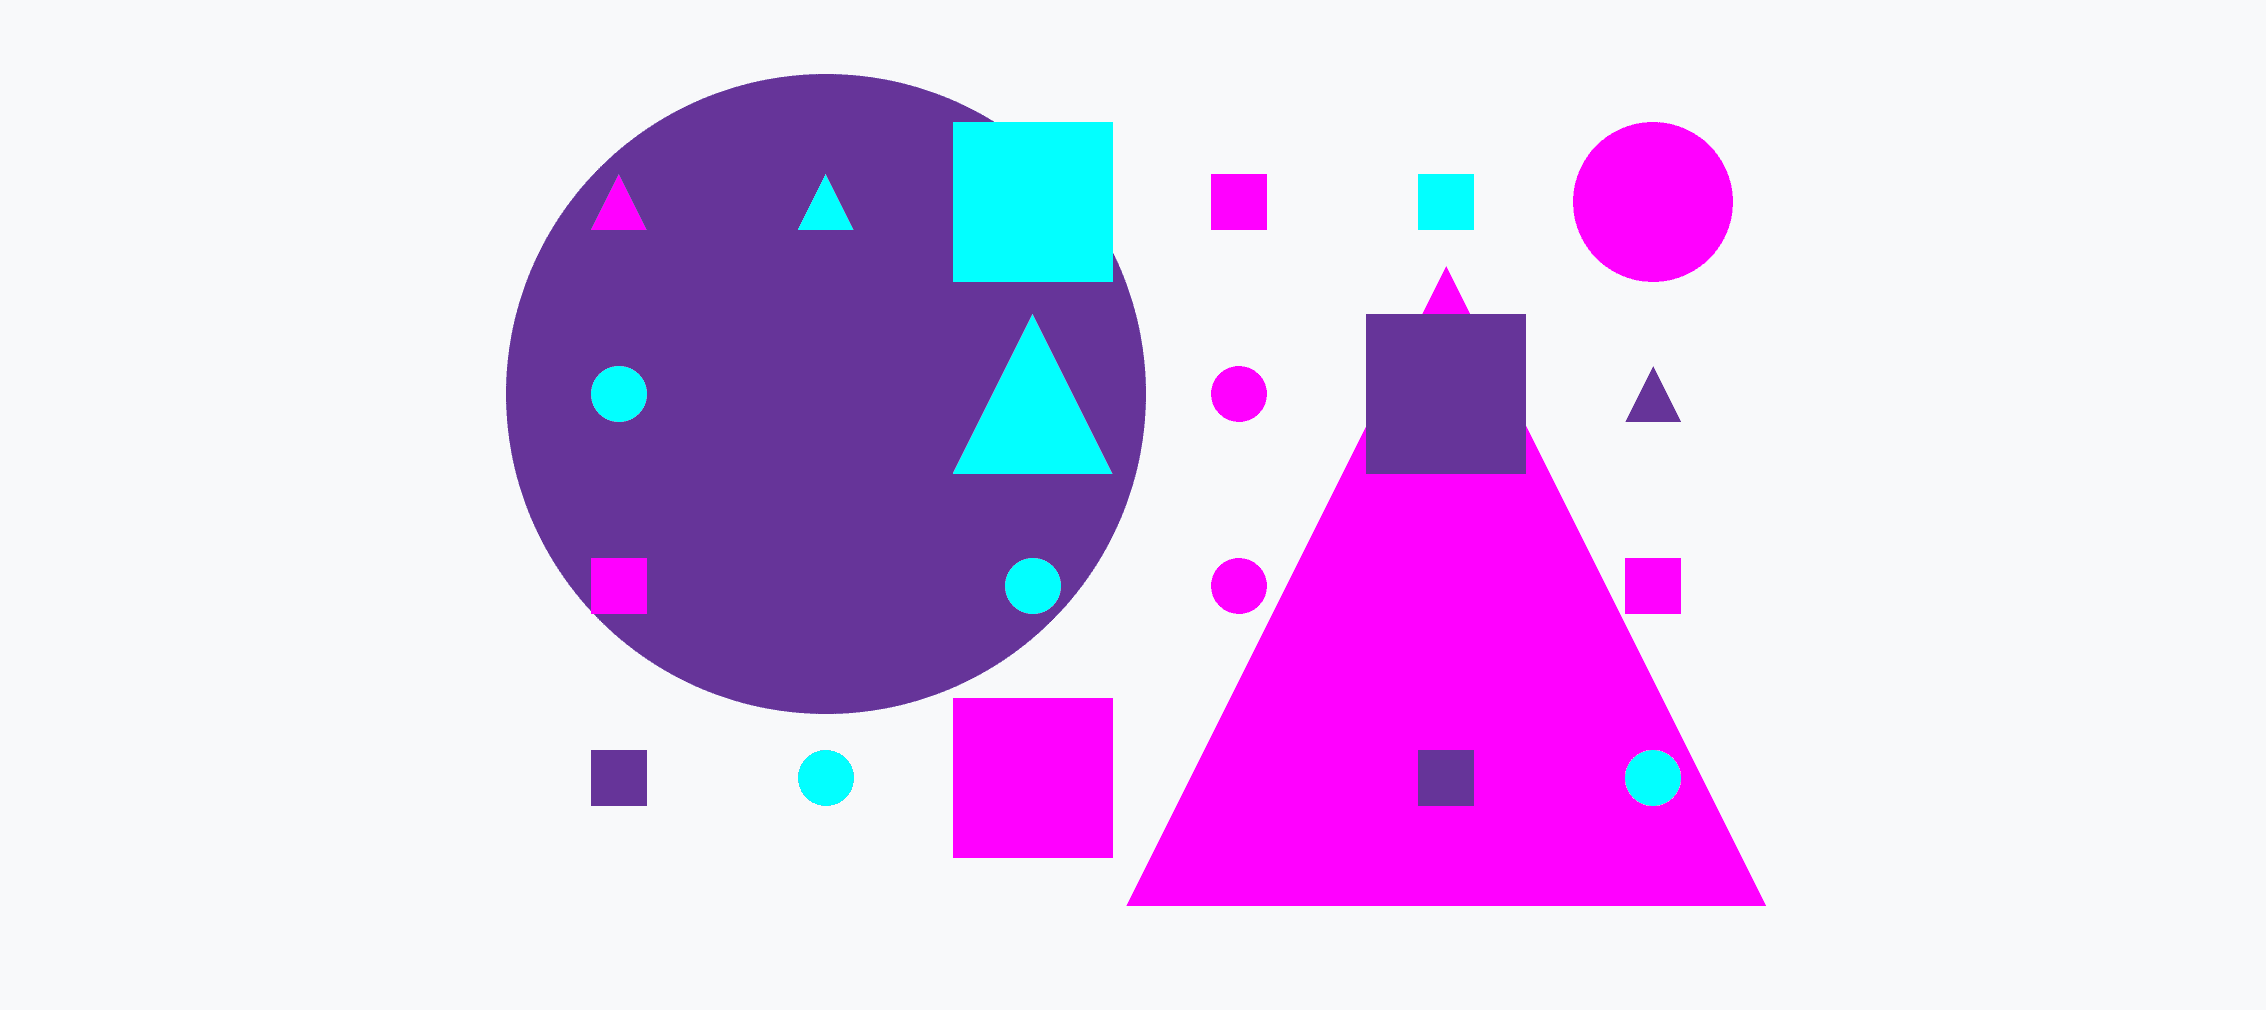 色彩繽紛的格線，內含大小圓圈、三角形和正方形。